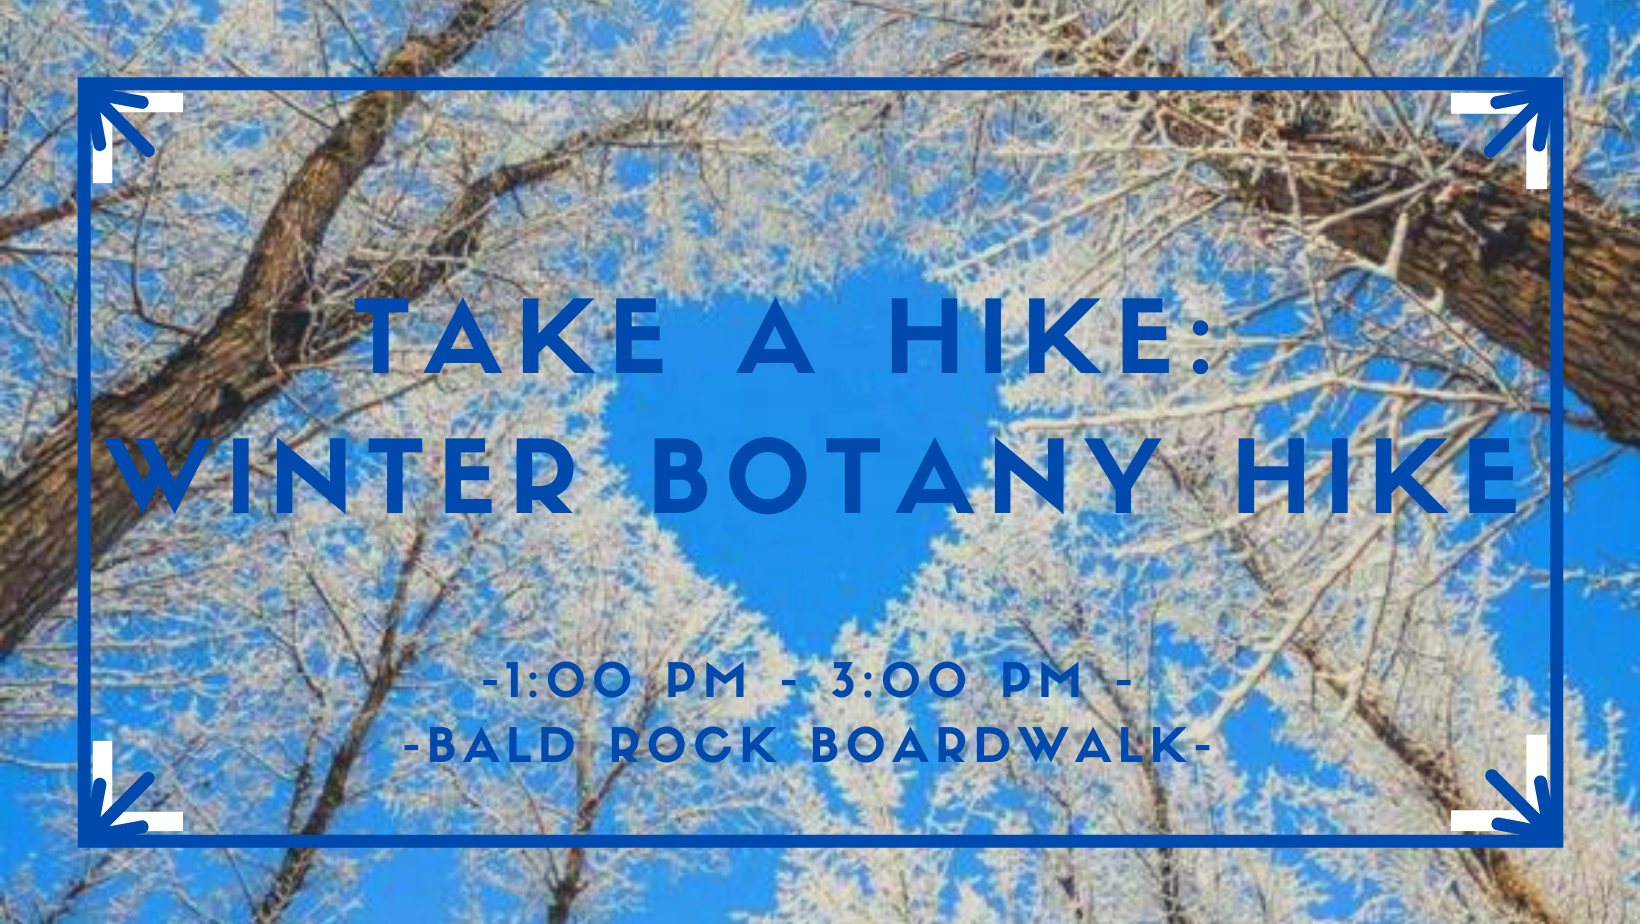 Take A Hike: Winter Botany Hike BRB